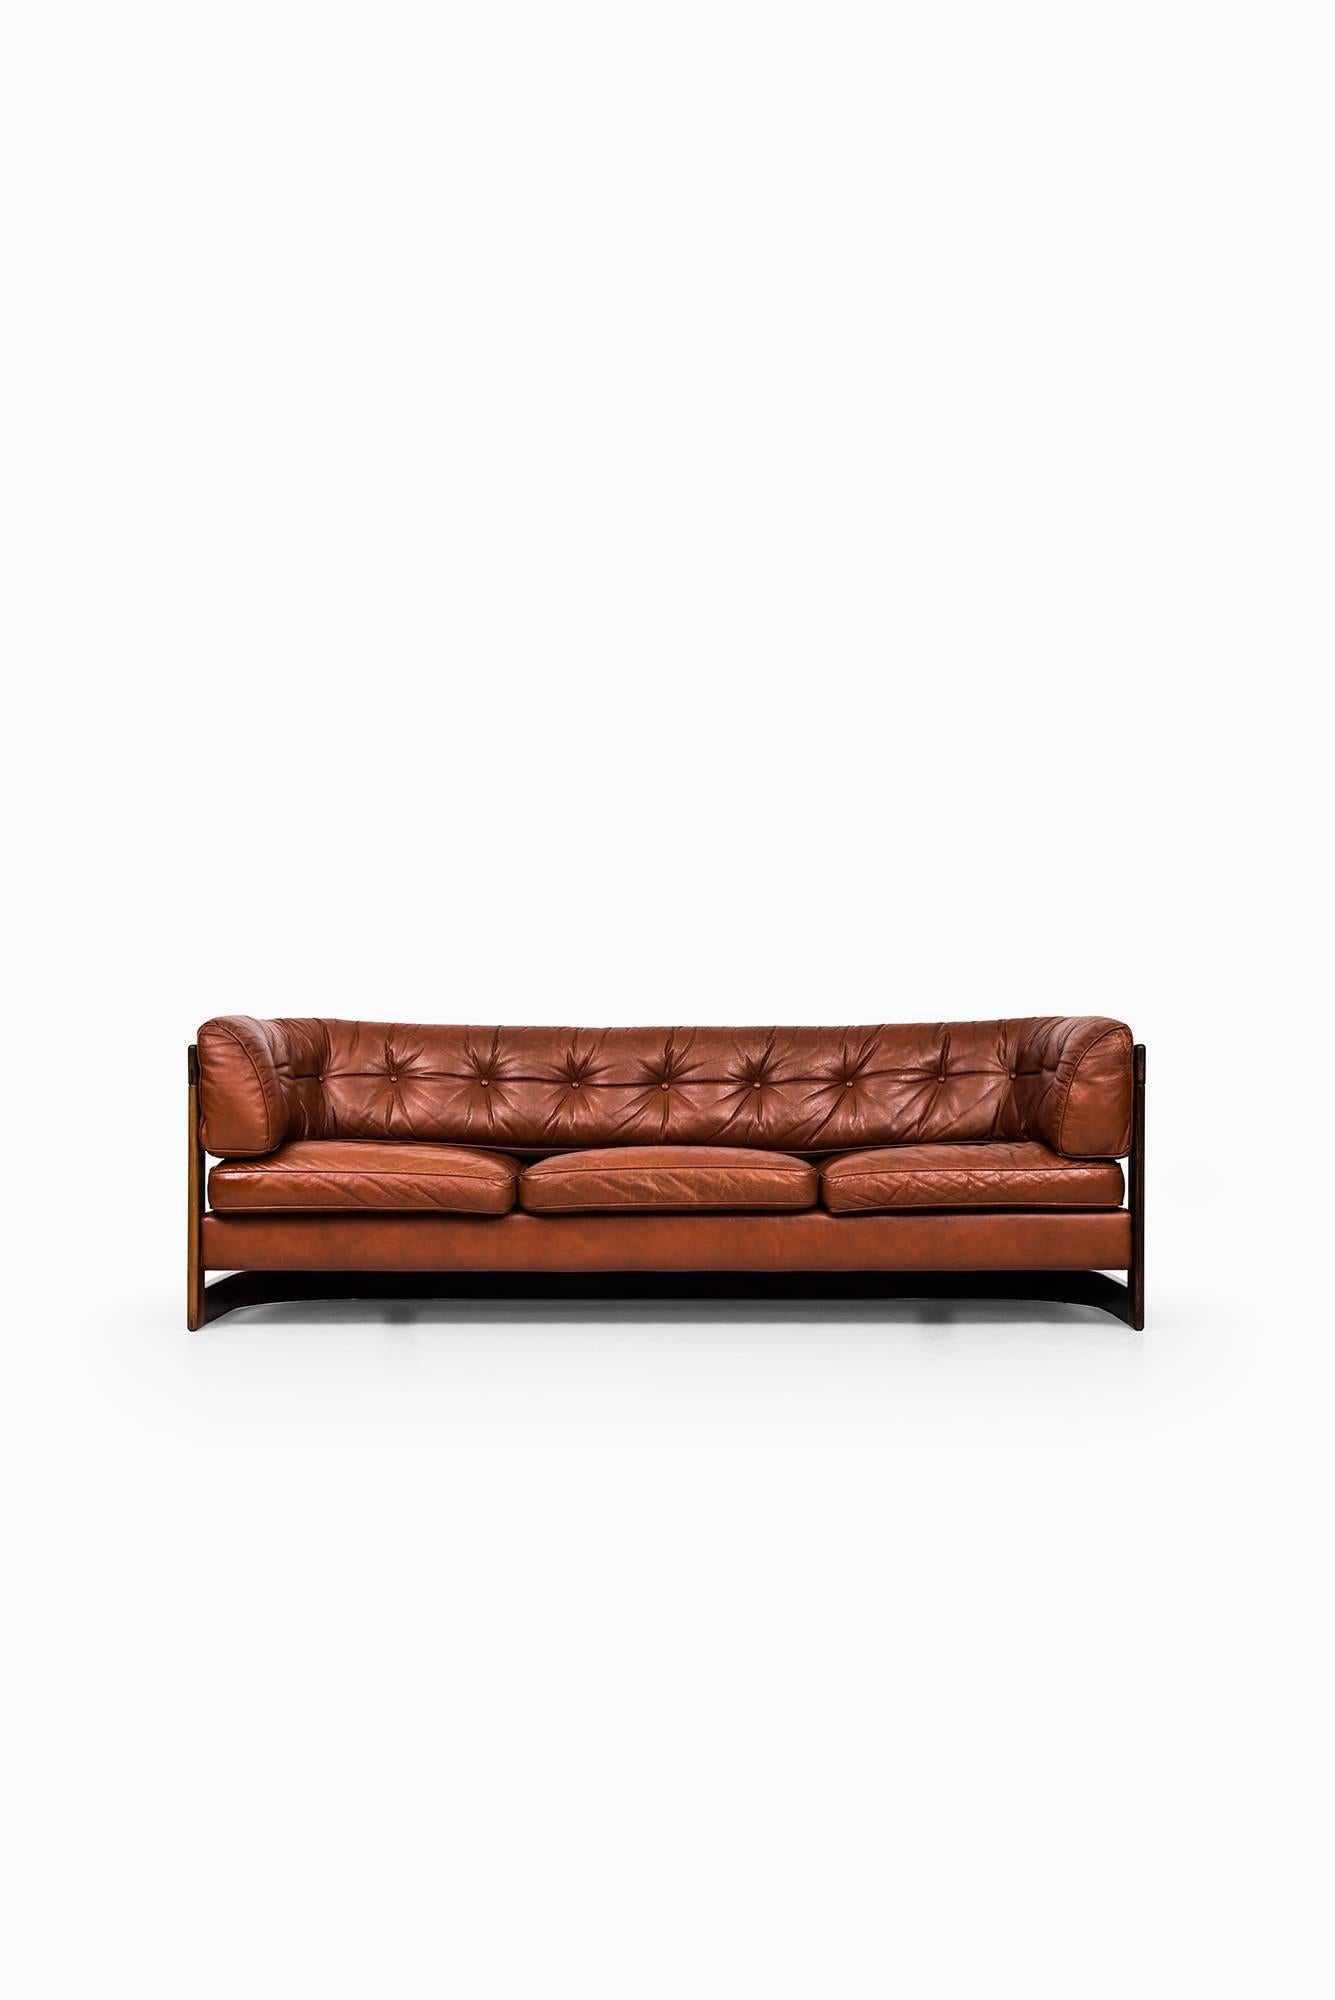 Rare 3-seat sofa designed by Lennart Bender. Produced by Stjernmöbler in Herrljunga, Sweden.